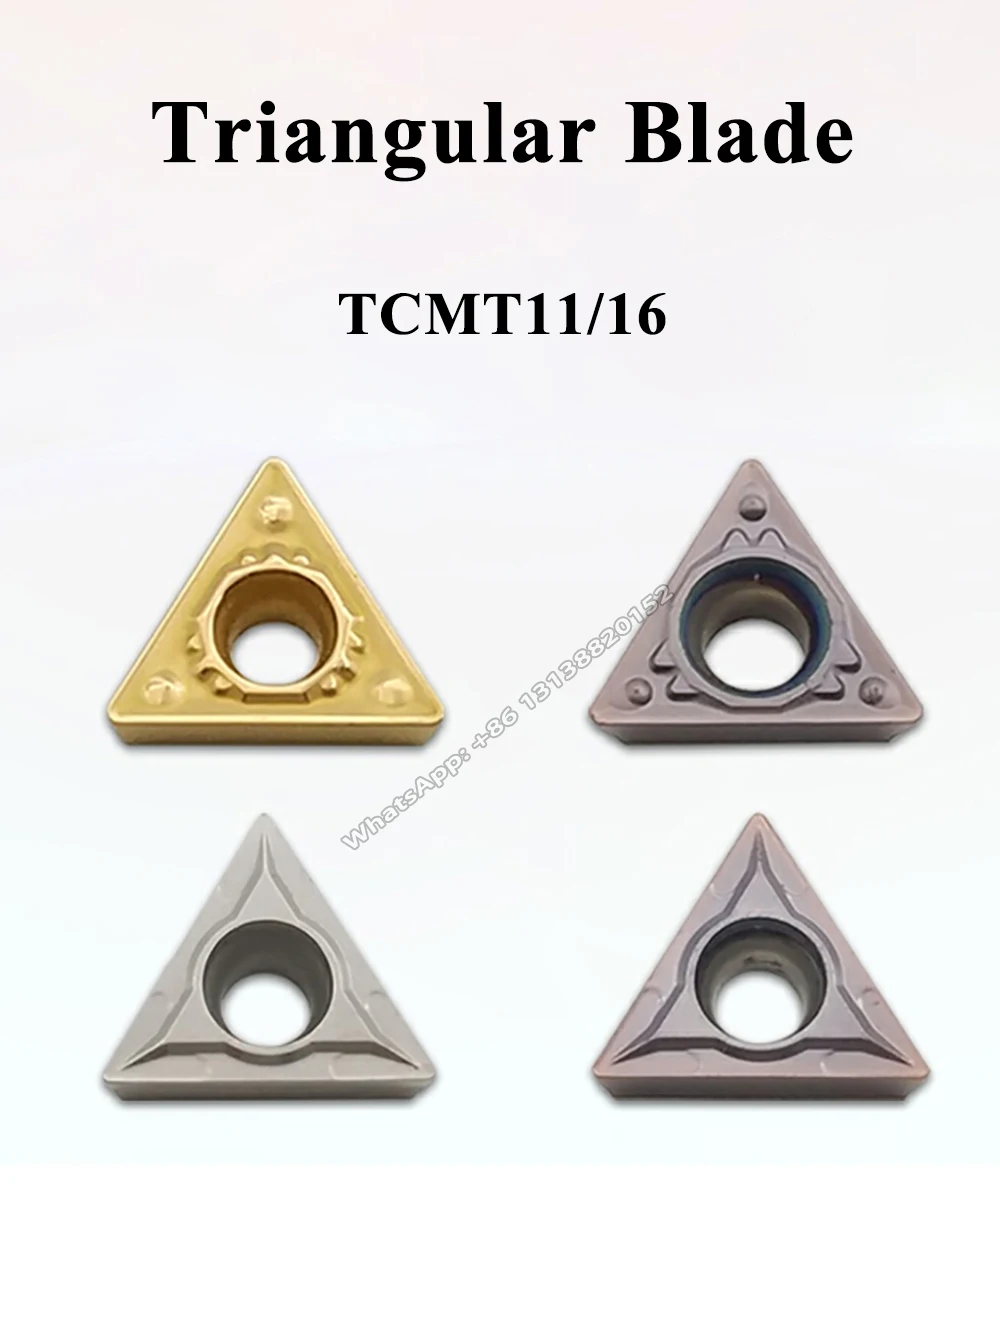 10 buc TCMT 090204 PM4225 insertii carbură pot fi indexate interne unelte de strunjit CNC lama Ceramica Interior plictisitor introduce . ' - ' . 1